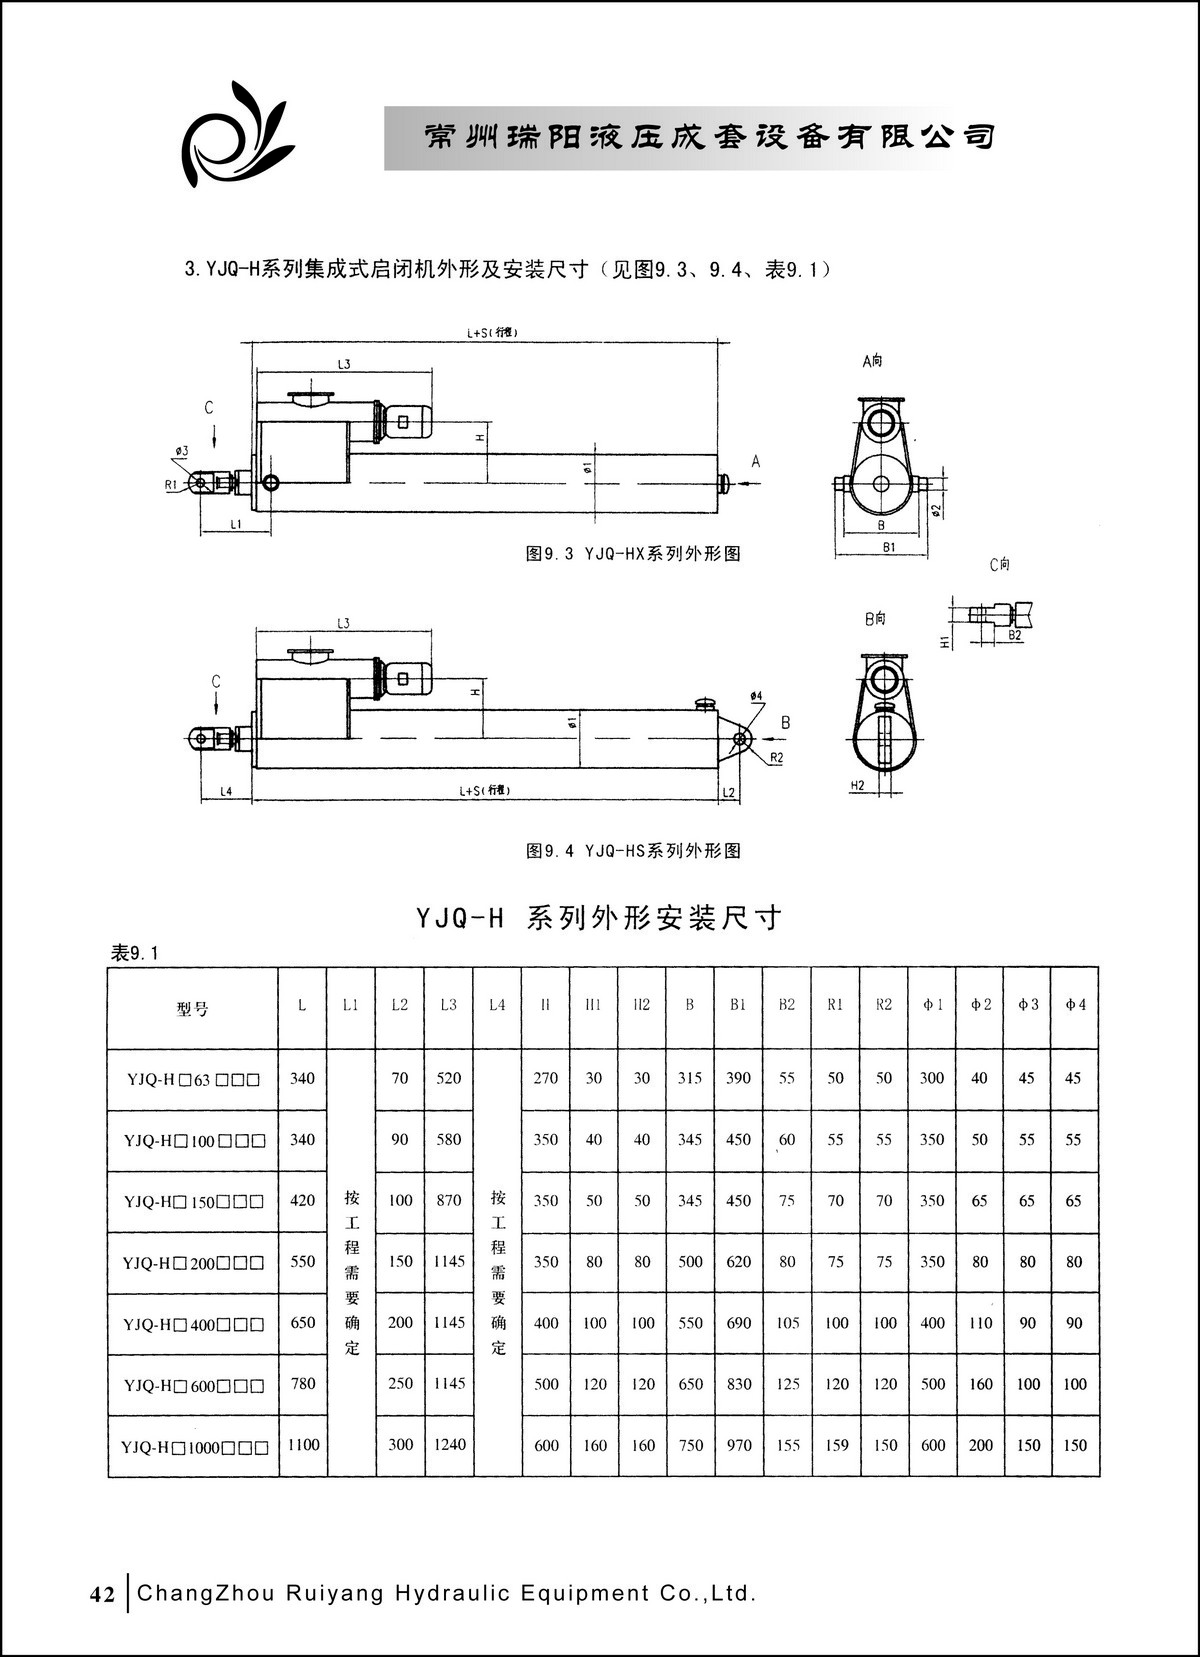 常州瑞阳液压成套设备有限公司产品样本2_页面_42.JPG